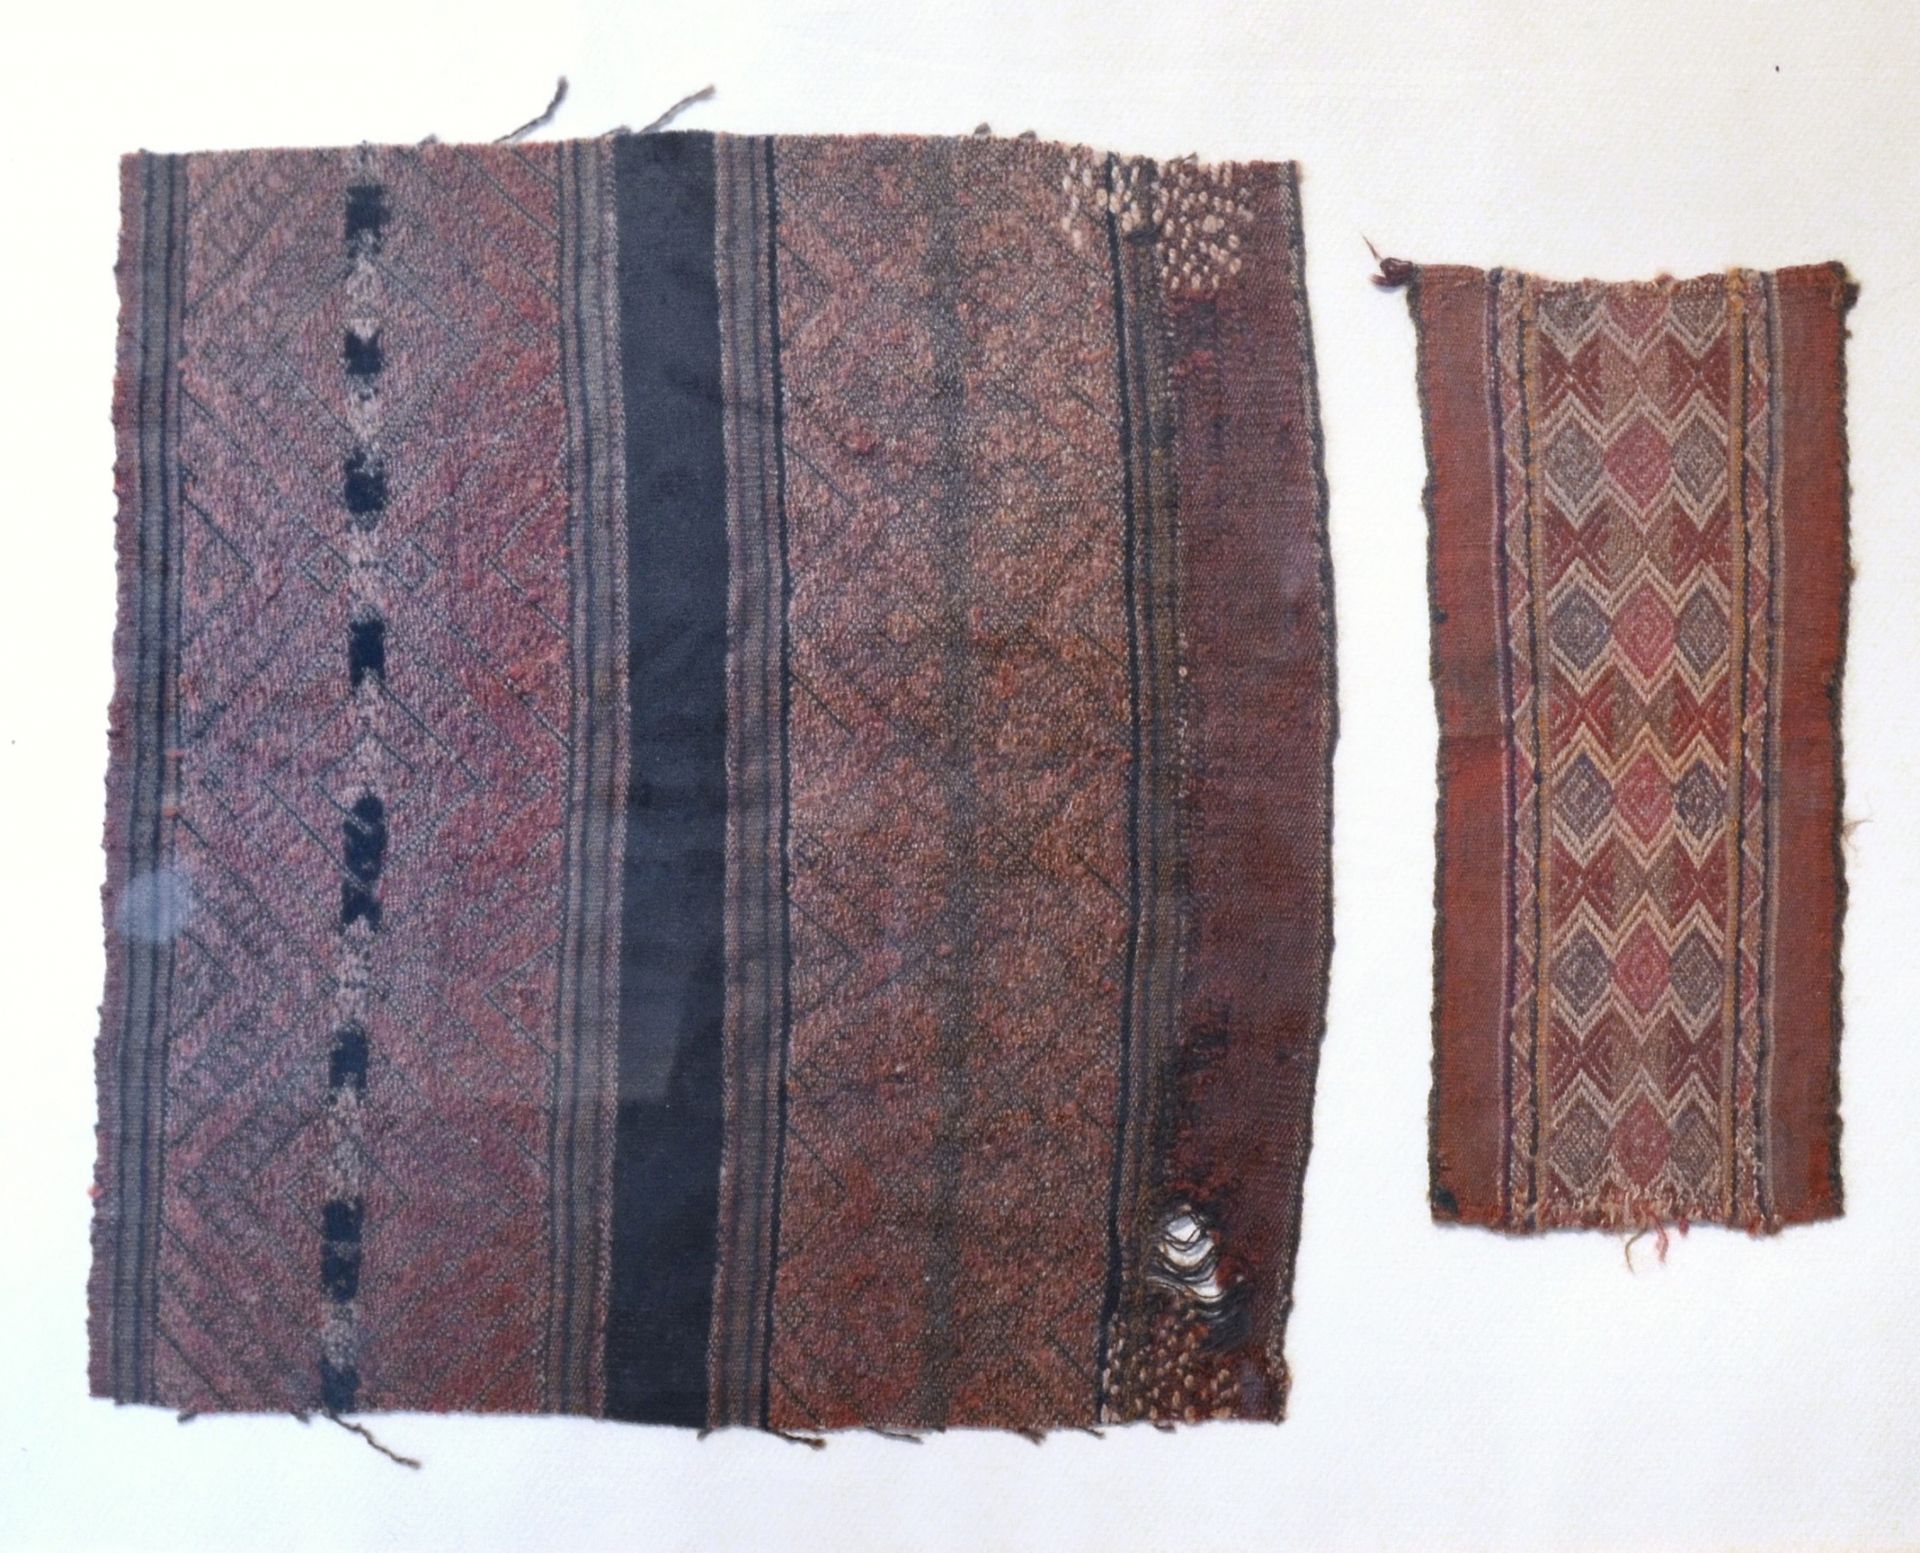 Deux fragments de tissu Ica, Perú, 1450-1532 d.C.

30,5 x 29 cm

22,5 x 10 cm